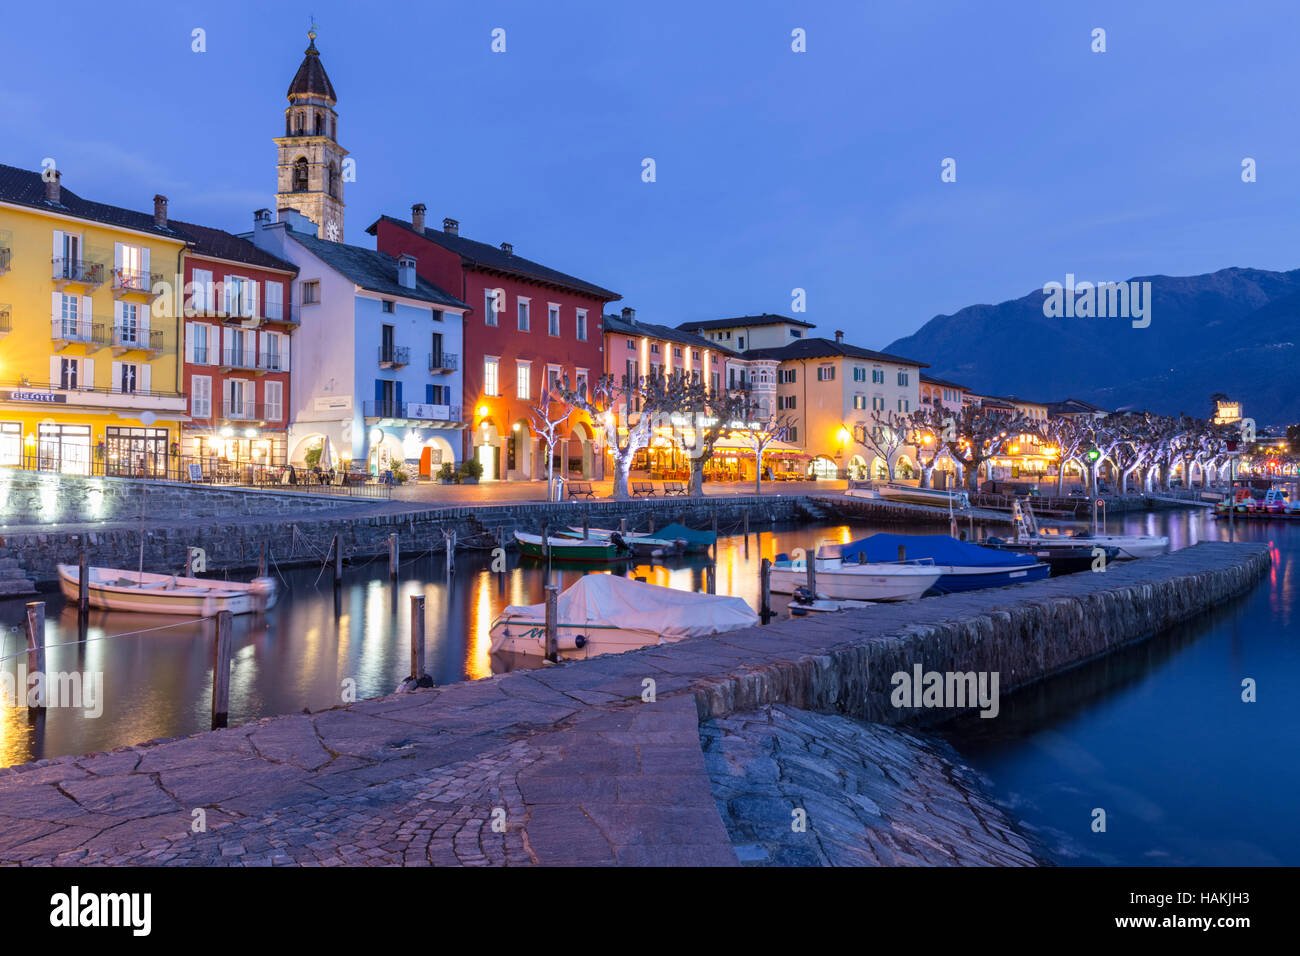 The small port of Ascona in front of Lago Maggiore, Canton Ticino, Switzerland. Stock Photo